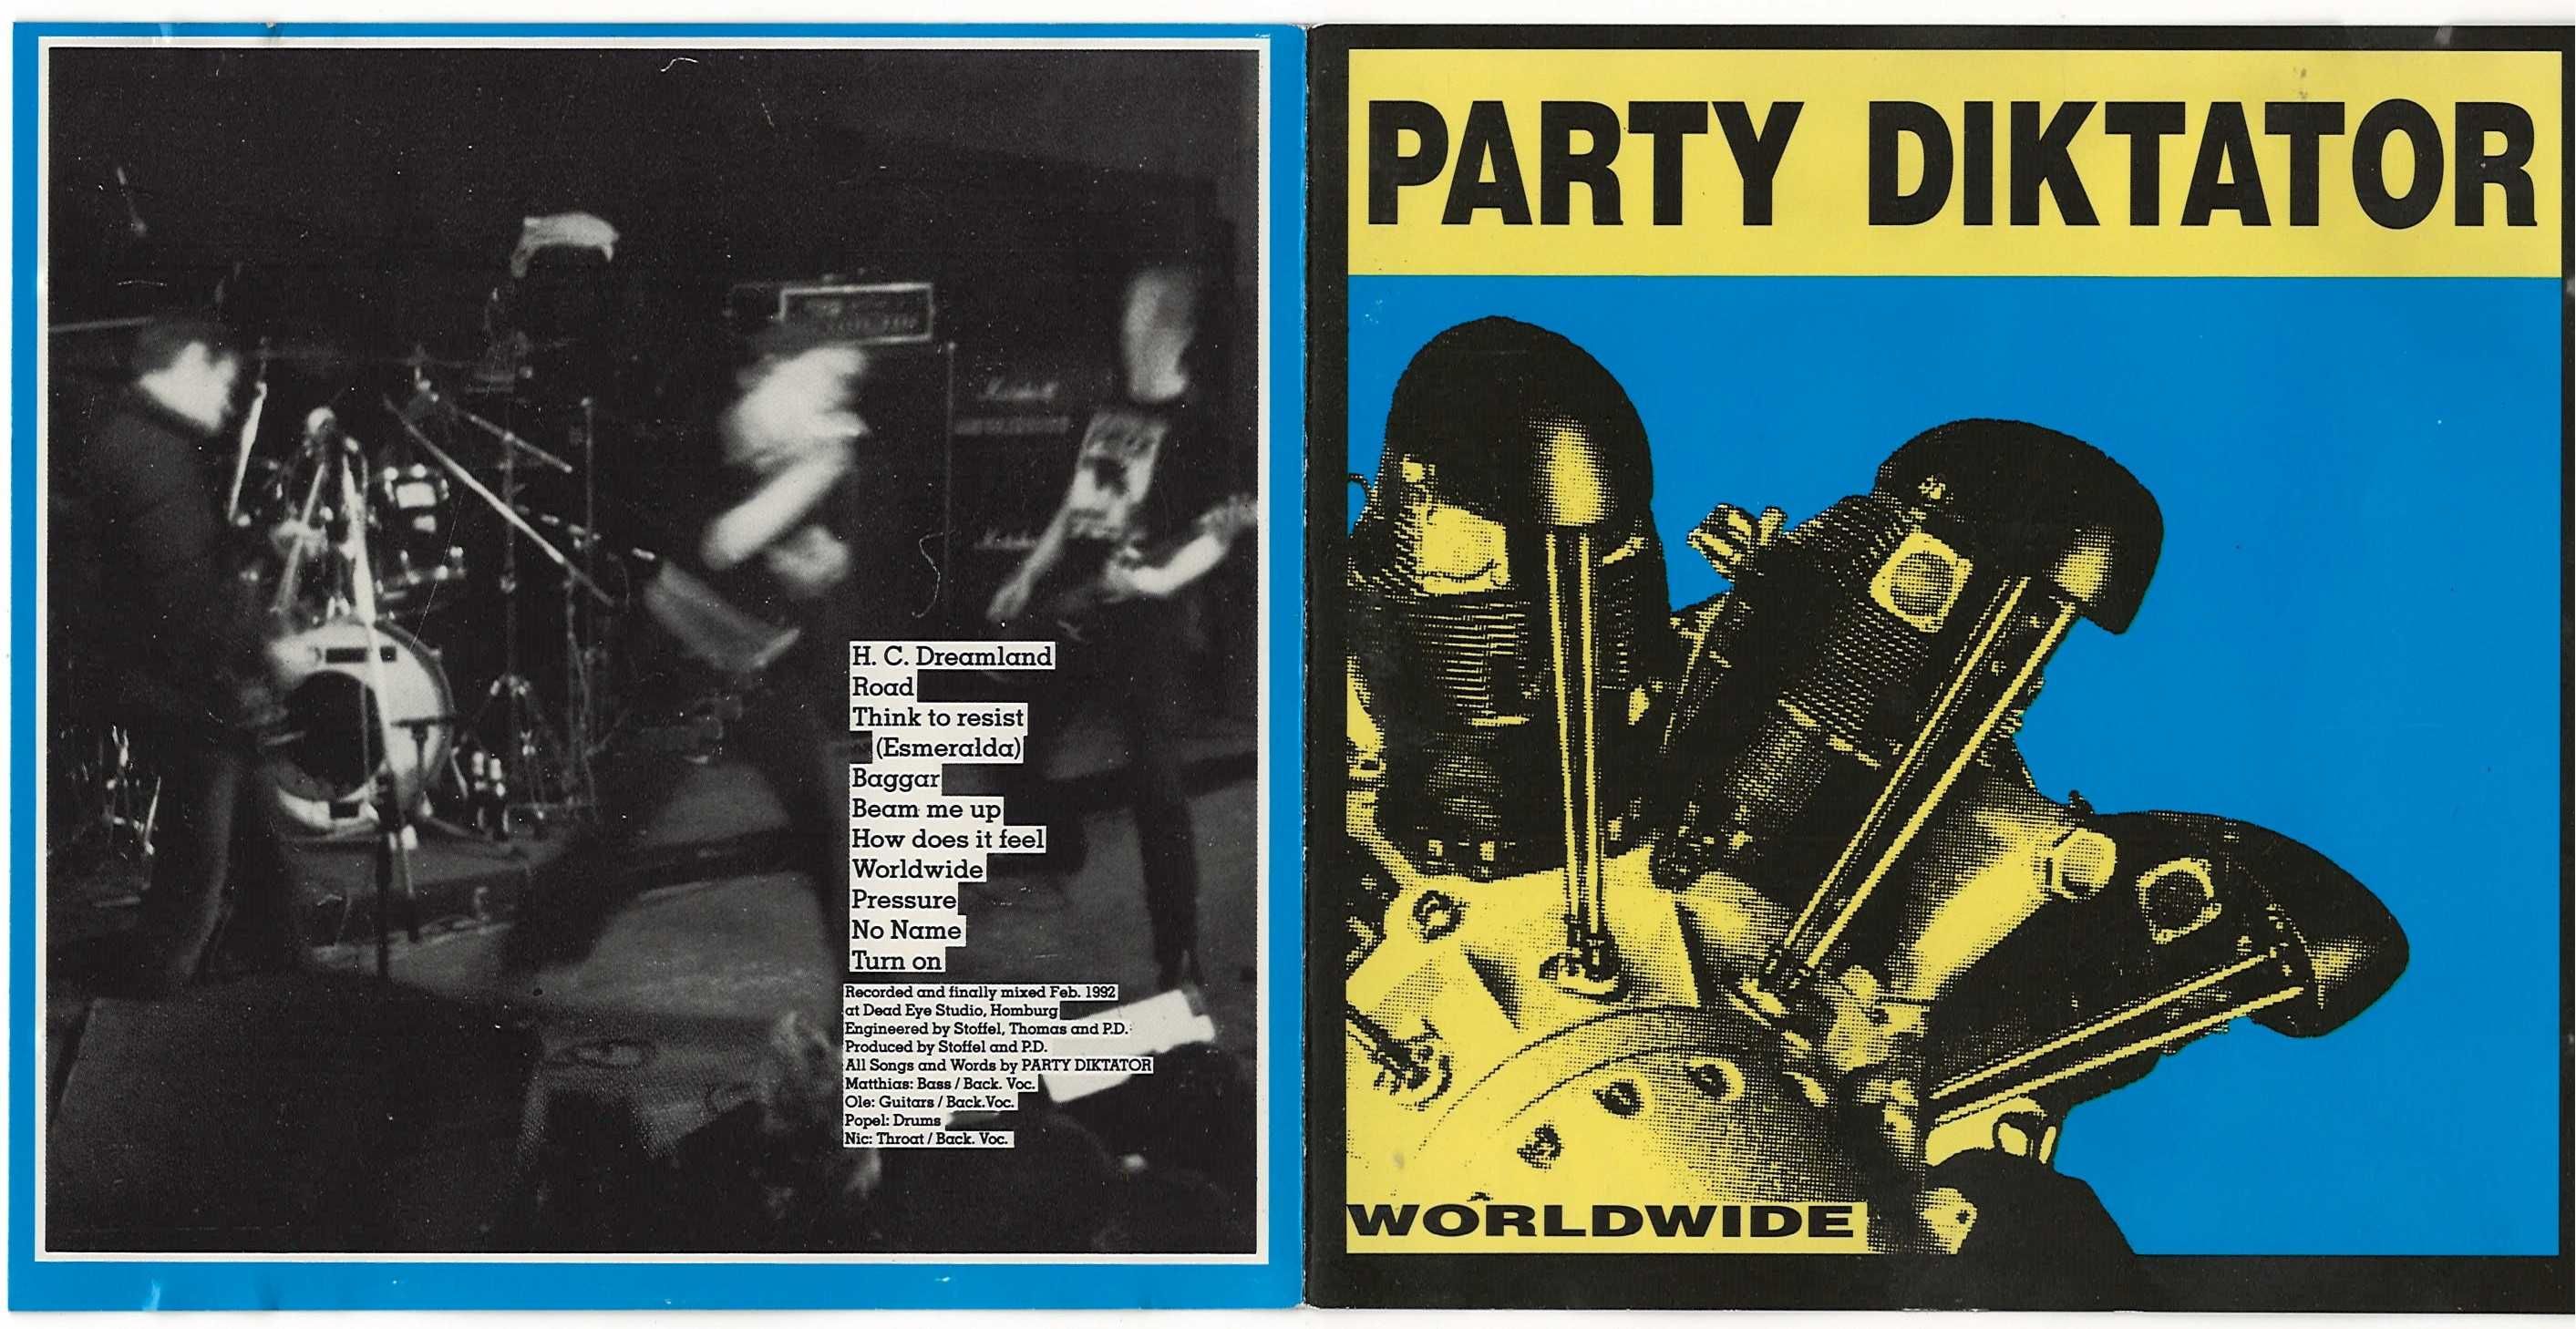 Party Diktator -  Worldwide